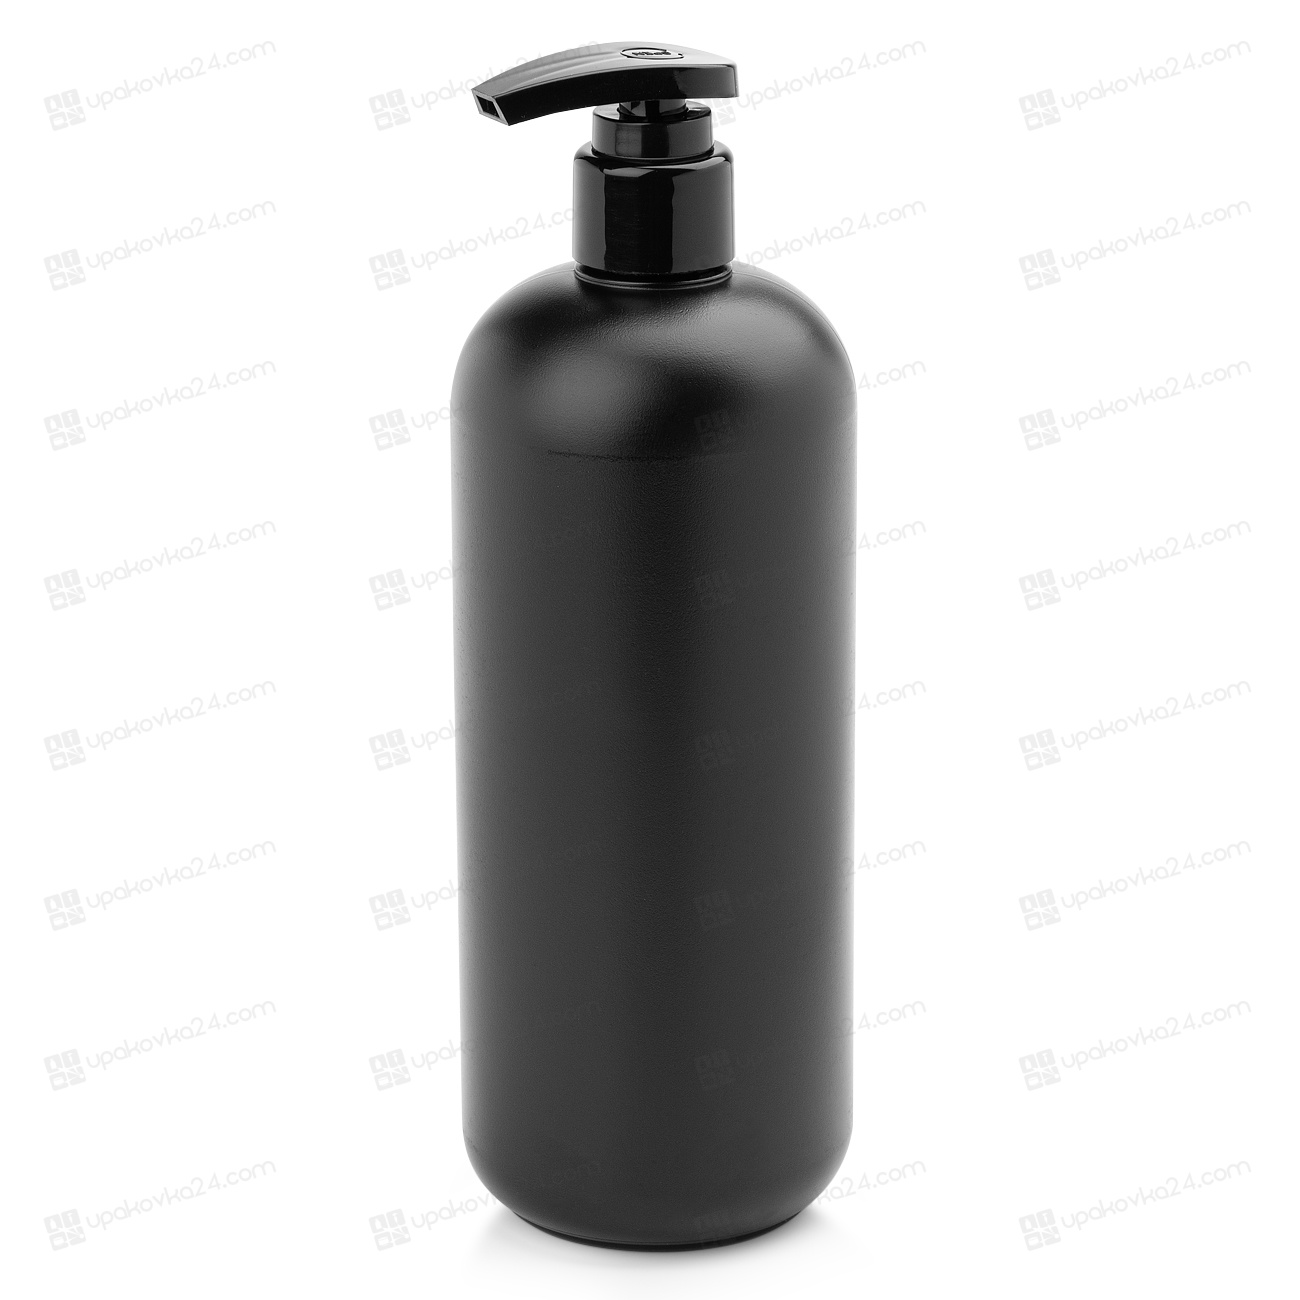 Бутылки для геля для душа. HDPE 1000 мл с дозатором. Гель шампунь для душа 1000мл черная бутылка. Гель для душа черный тюльпан 1000мл/6 флакон. FF бутылка черная 1000мл.